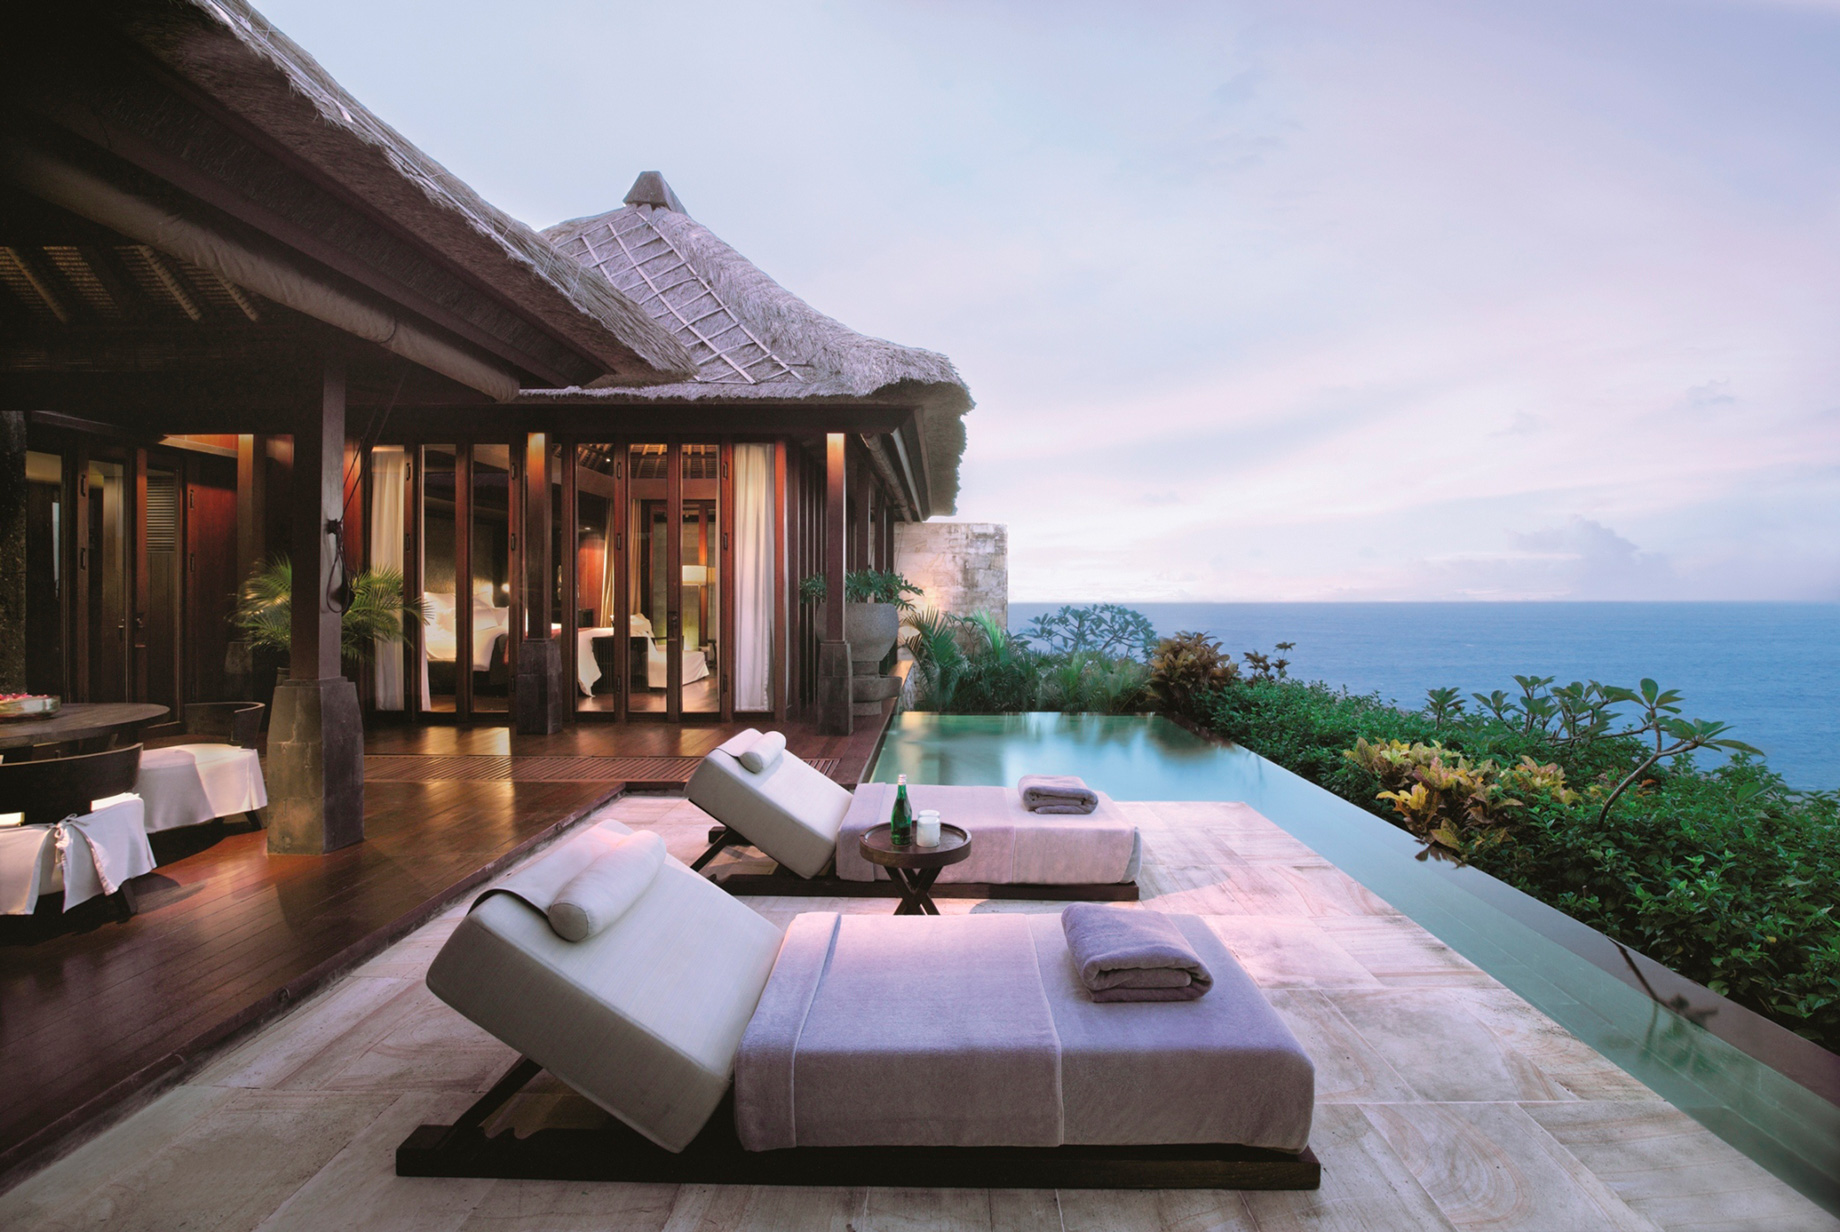 Bvlgari Resort Bali - Uluwatu, Bali, Indonesia - Ocean Cliff Villa Pool Deck Ocean View Dusk